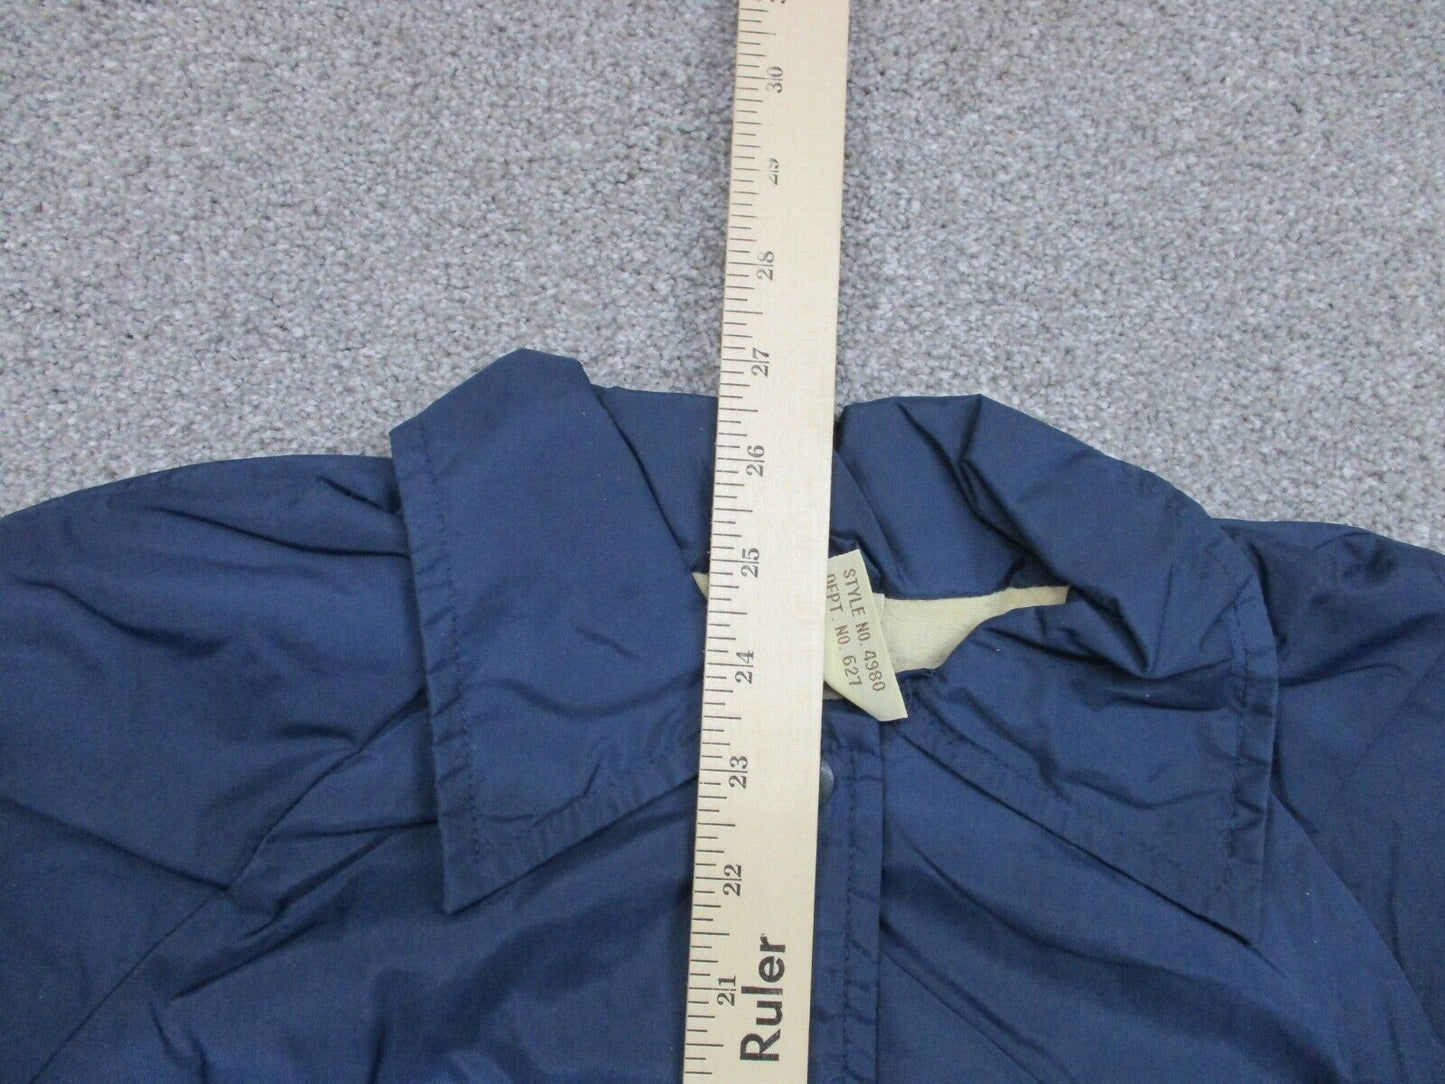 Sears Men's Full Zip Up Windbreaker Track Jacket Long Sleeves Navy Blue Size L